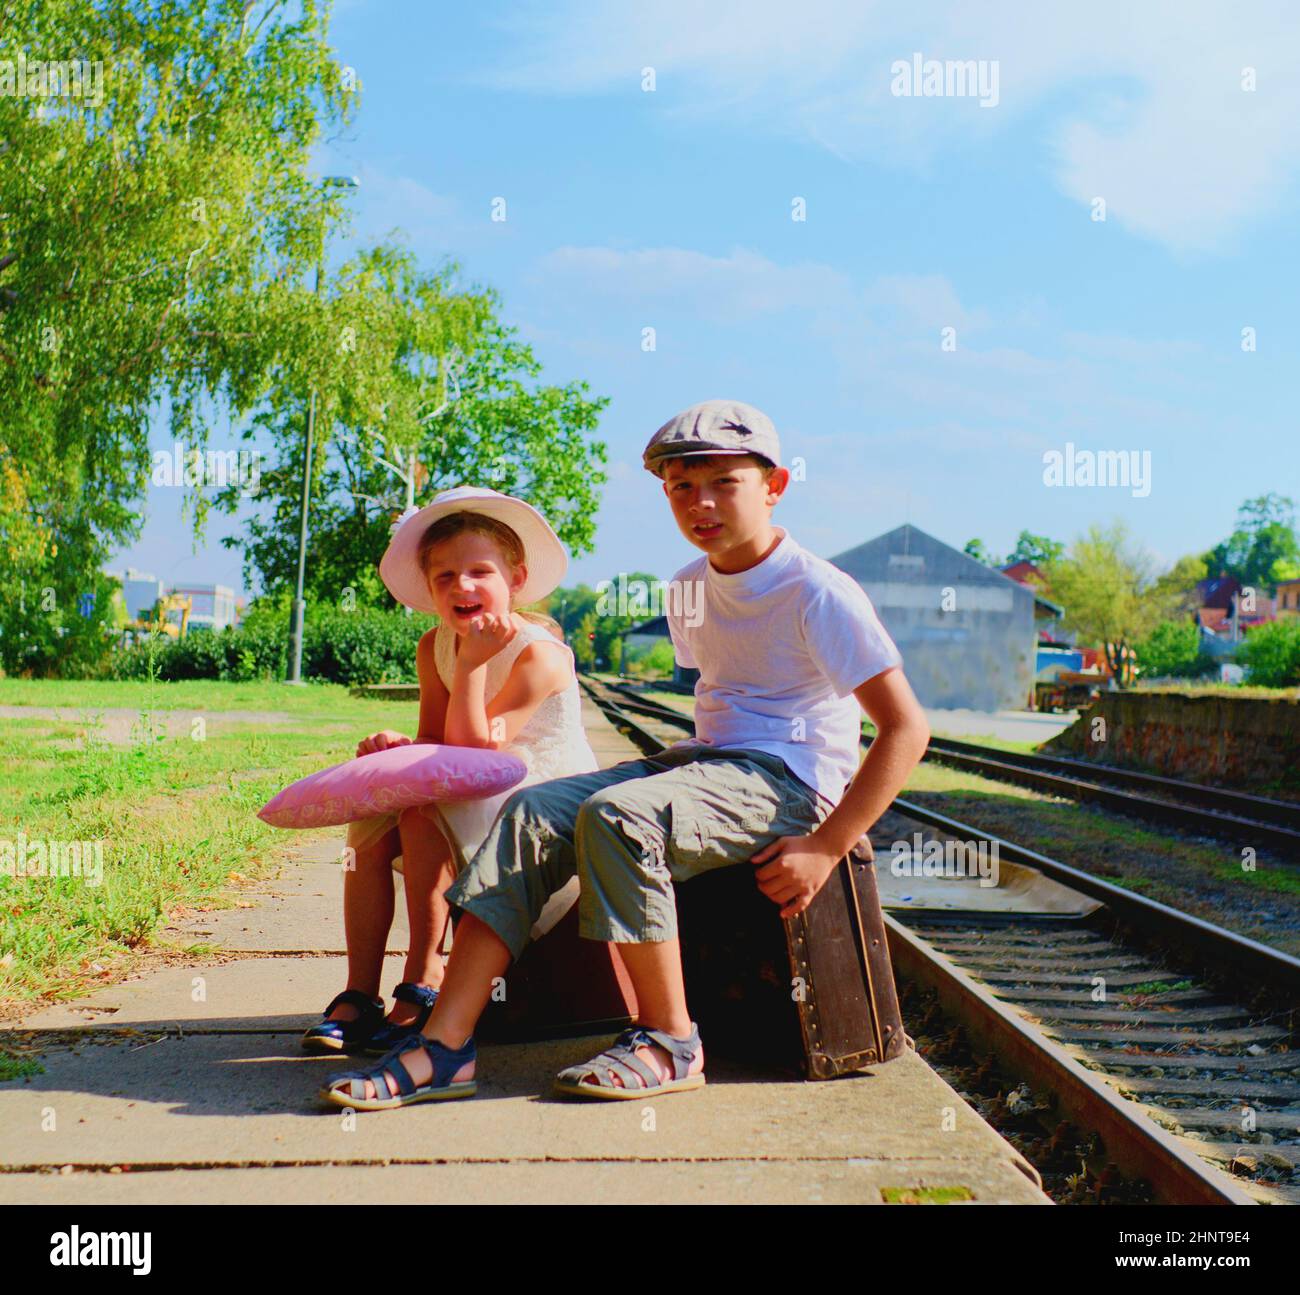 Adorabile bambina e ragazzo su una stazione ferroviaria, in attesa del treno con valige d'epoca. Concetto di viaggio, vacanza e relax. Assicurazione di viaggio concetto Foto Stock